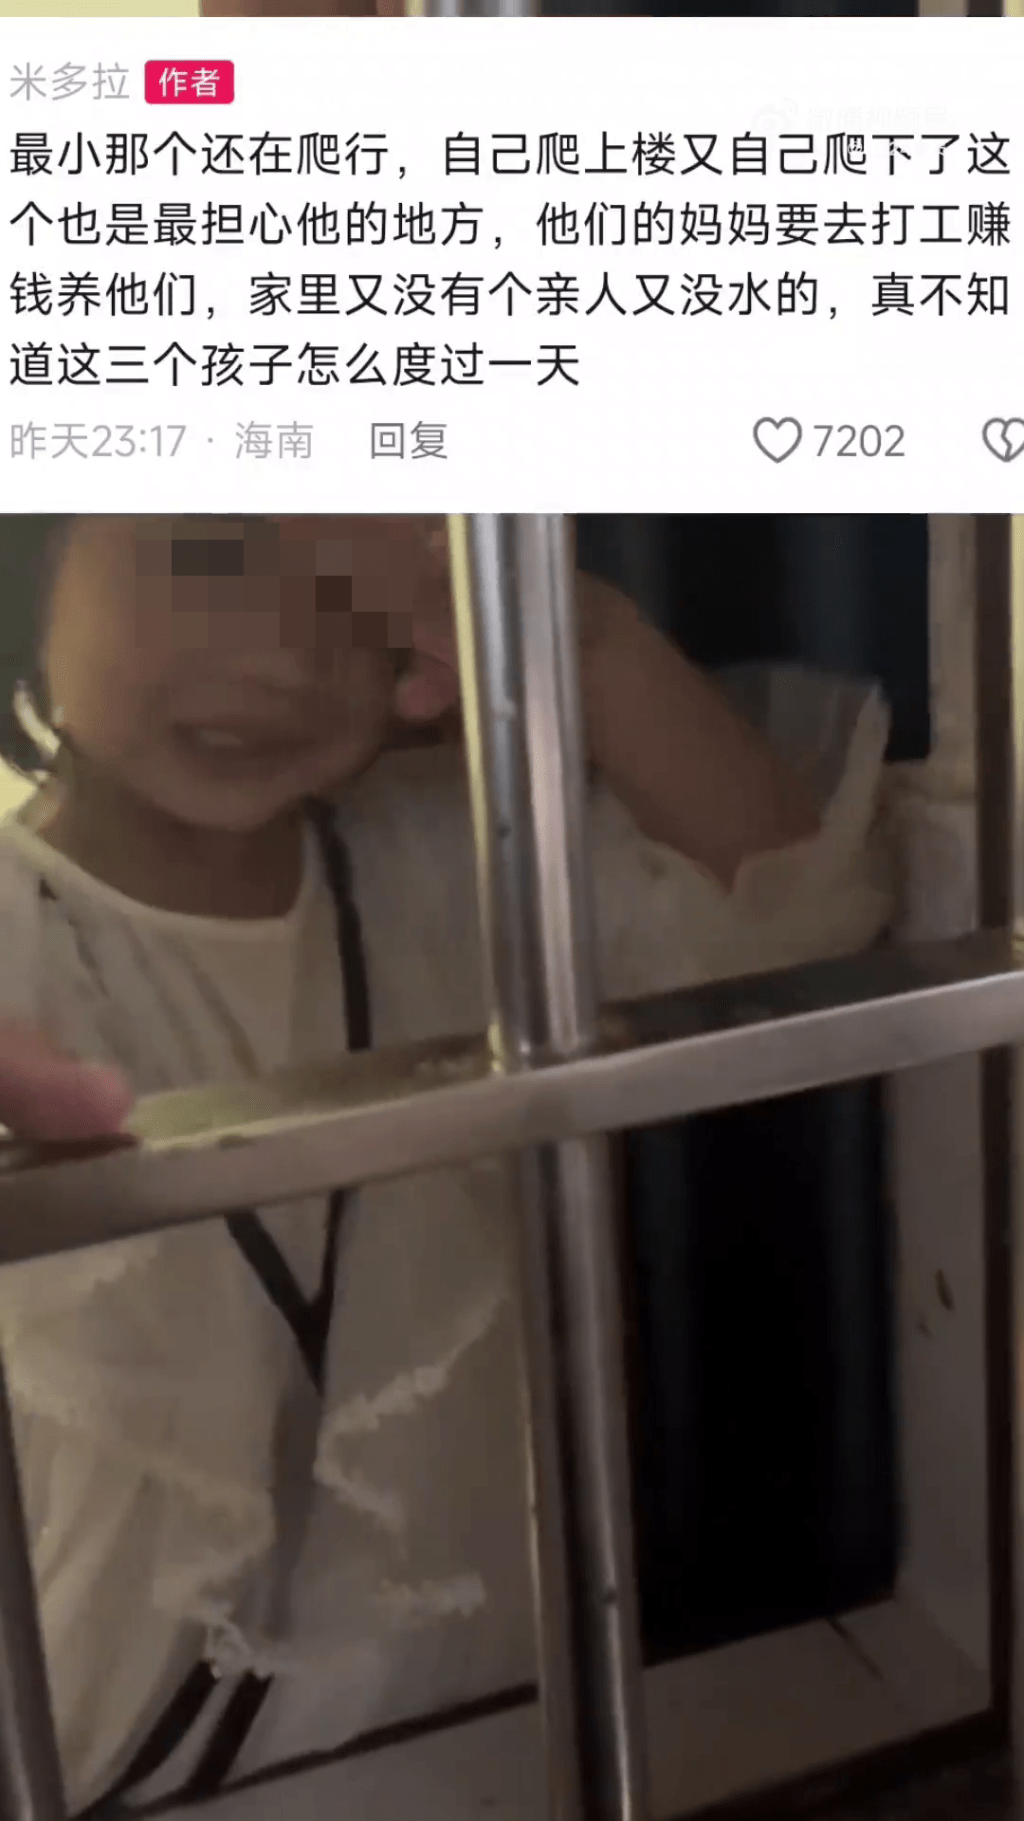 内地网传「海南3个小孩被锁家里、一天只吃一餐饭、家中地上全是排泄物」的相关影片。